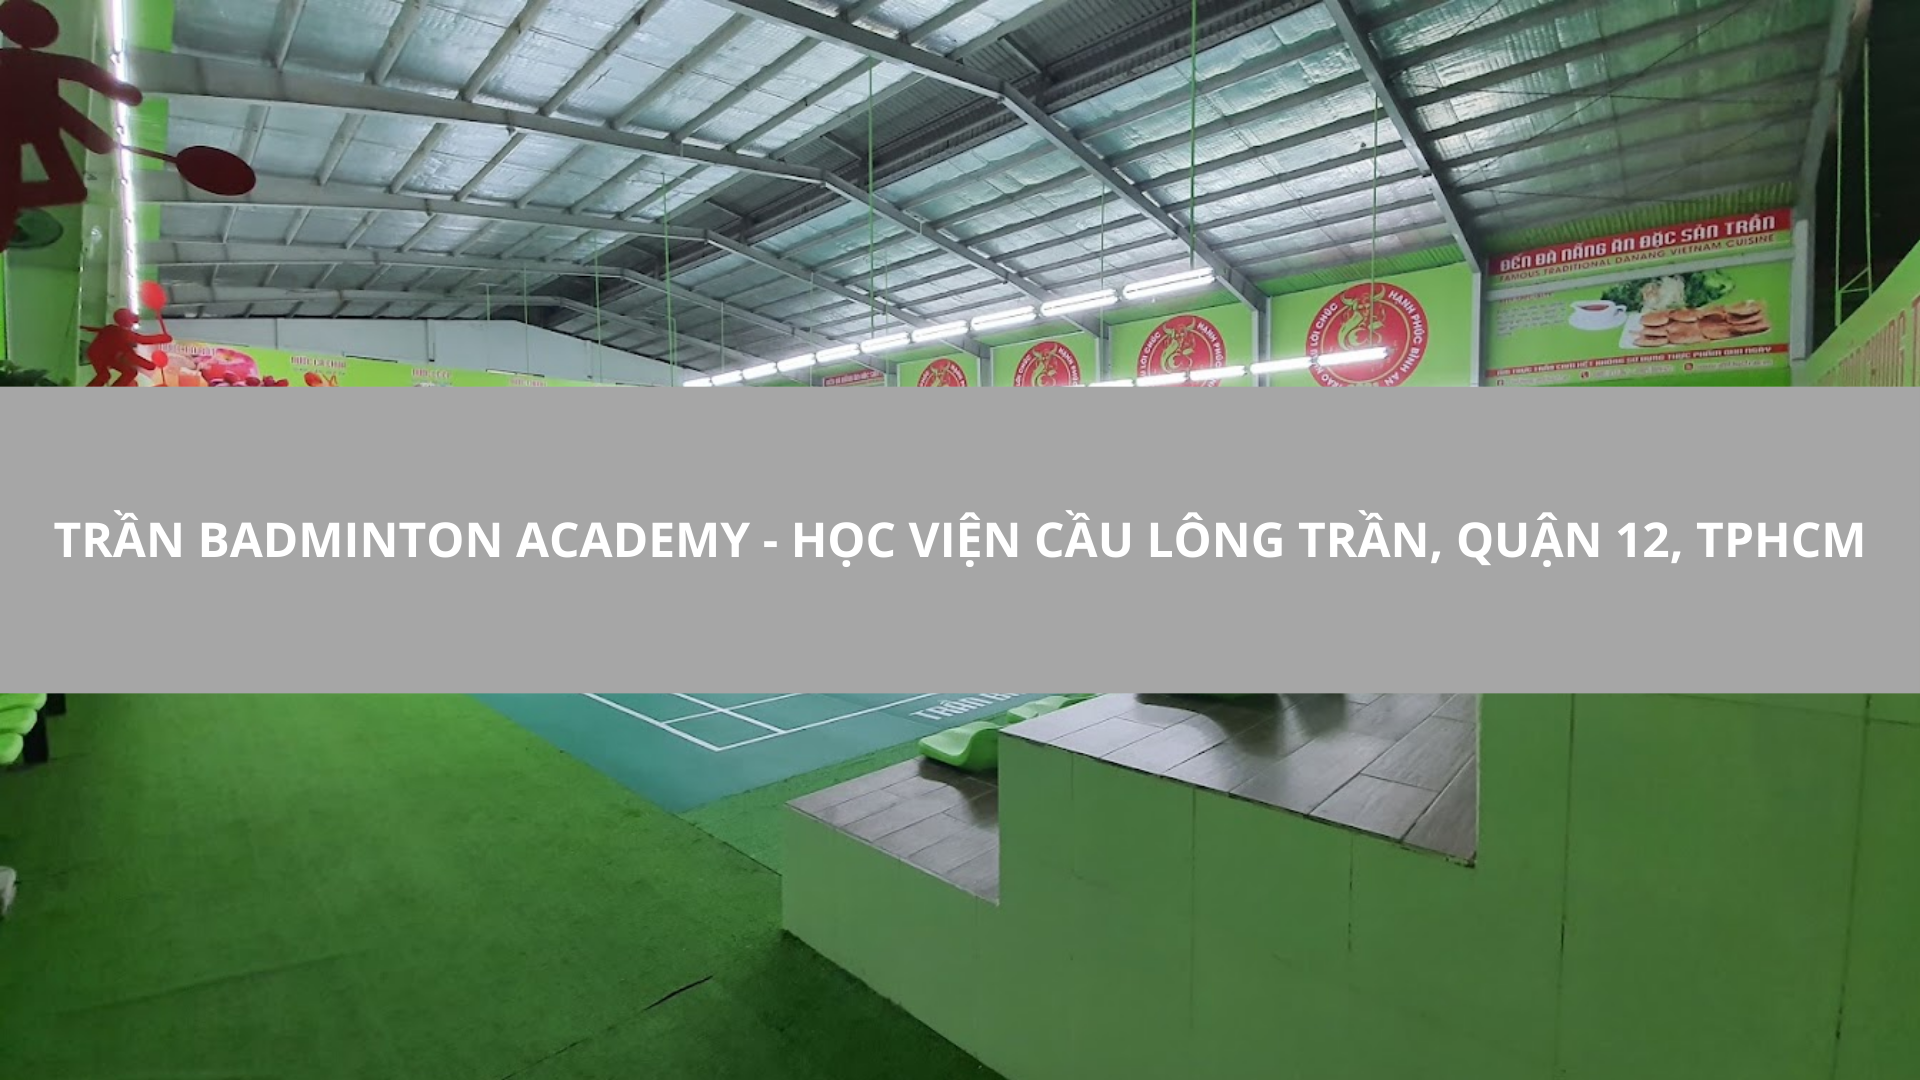 Trần Badminton Academy - Học viện cầu lông Trần, Quận 12, TPHCM